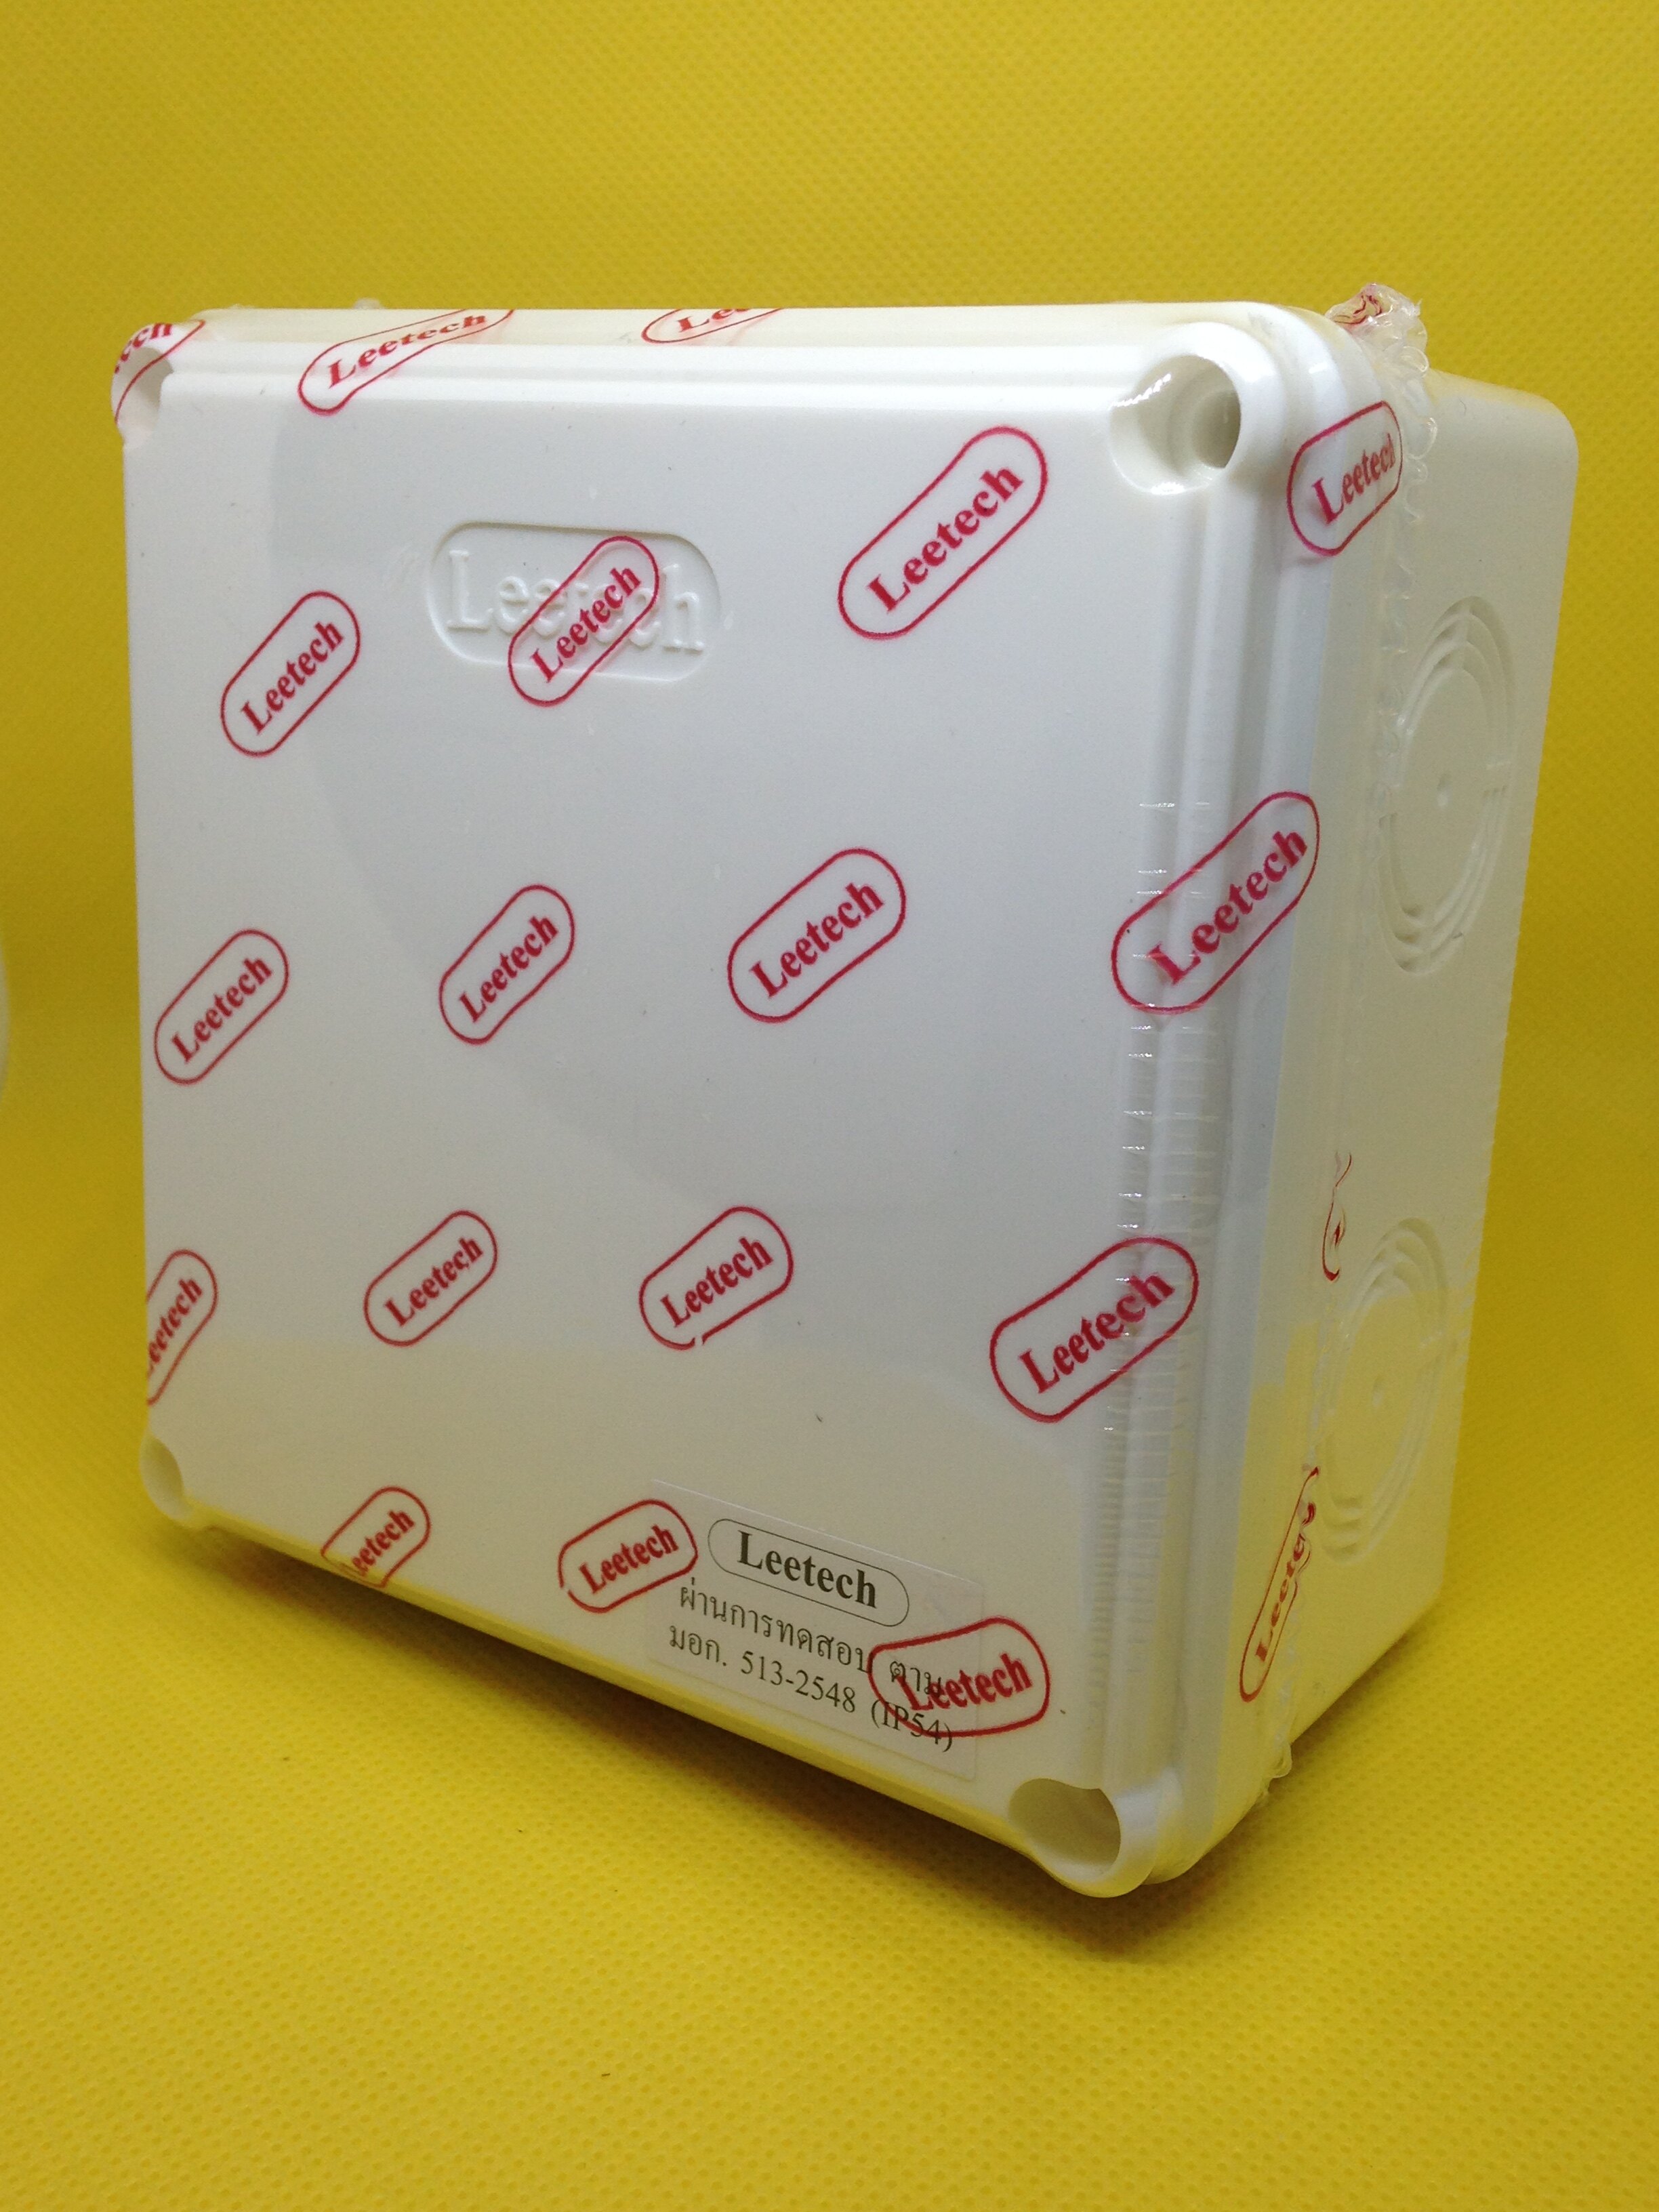 กล่องพักสาย ลีเทค LEETECH สีขาว ขนาด 4x4x2.5 นิ้ว